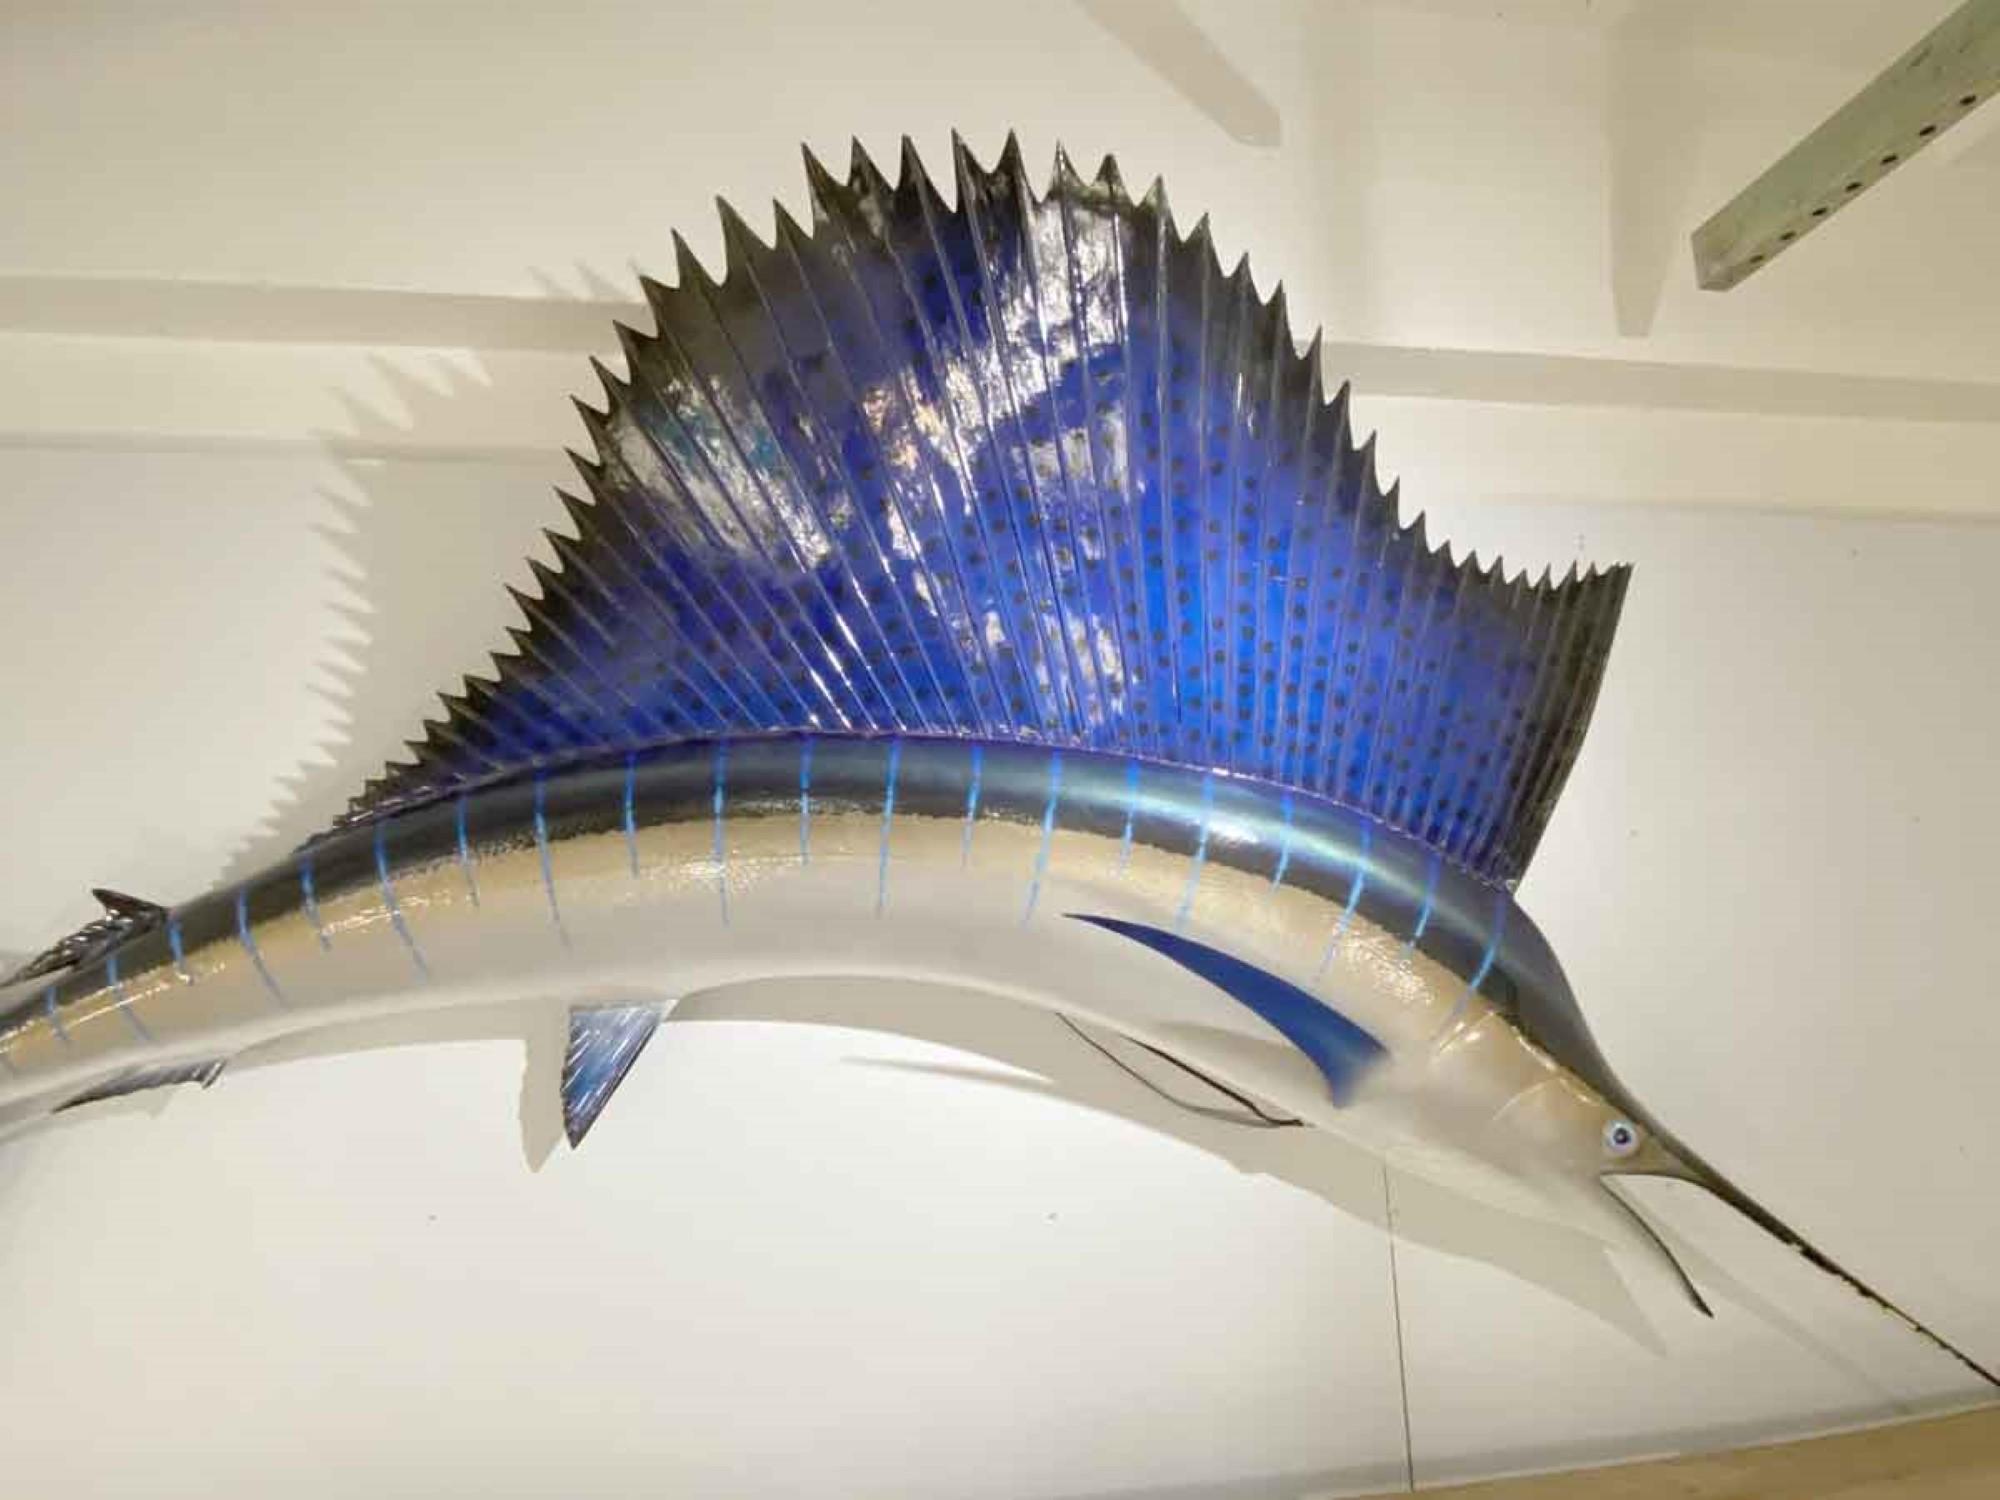 Réplique de voilier bleu et gris en fibre de verre, grandeur nature, datant des années 1990. Veuillez noter que cet article se trouve dans l'un de nos bureaux de New York.